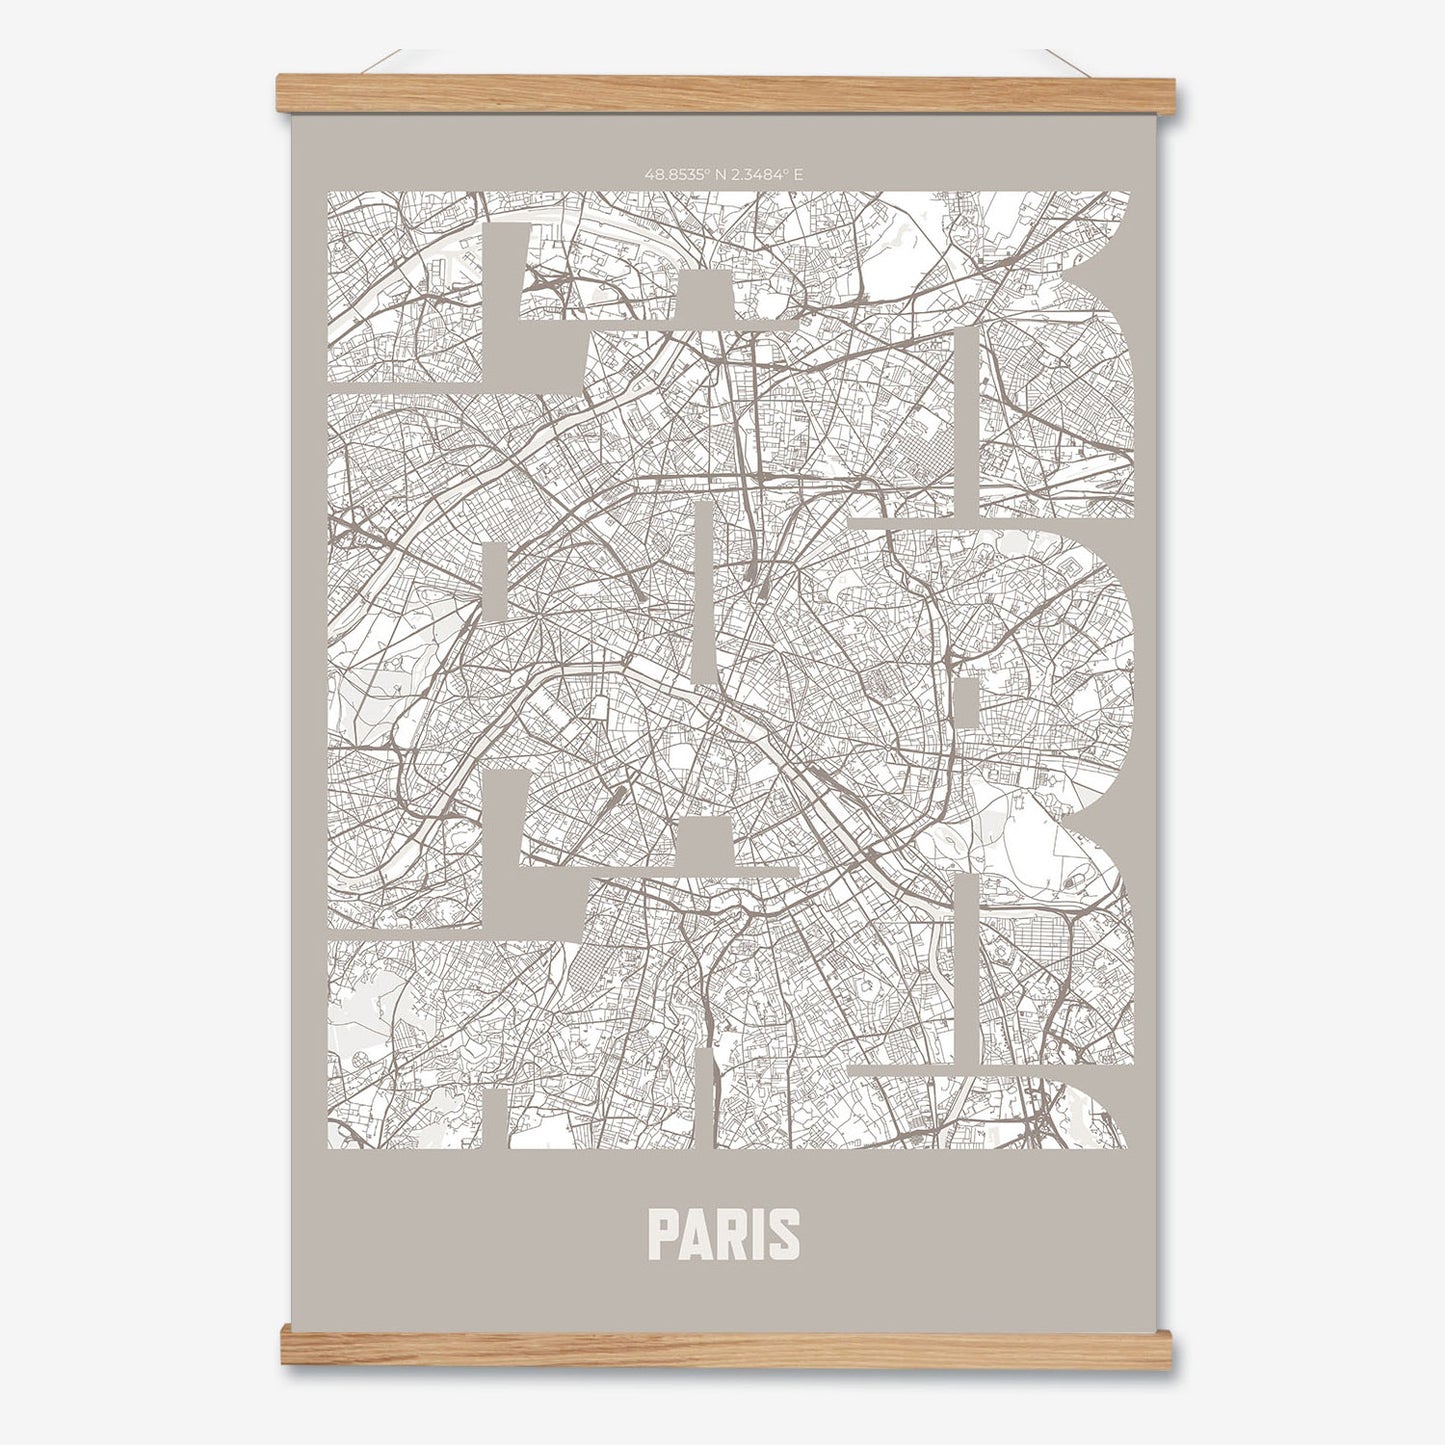 PAR Paris Poster